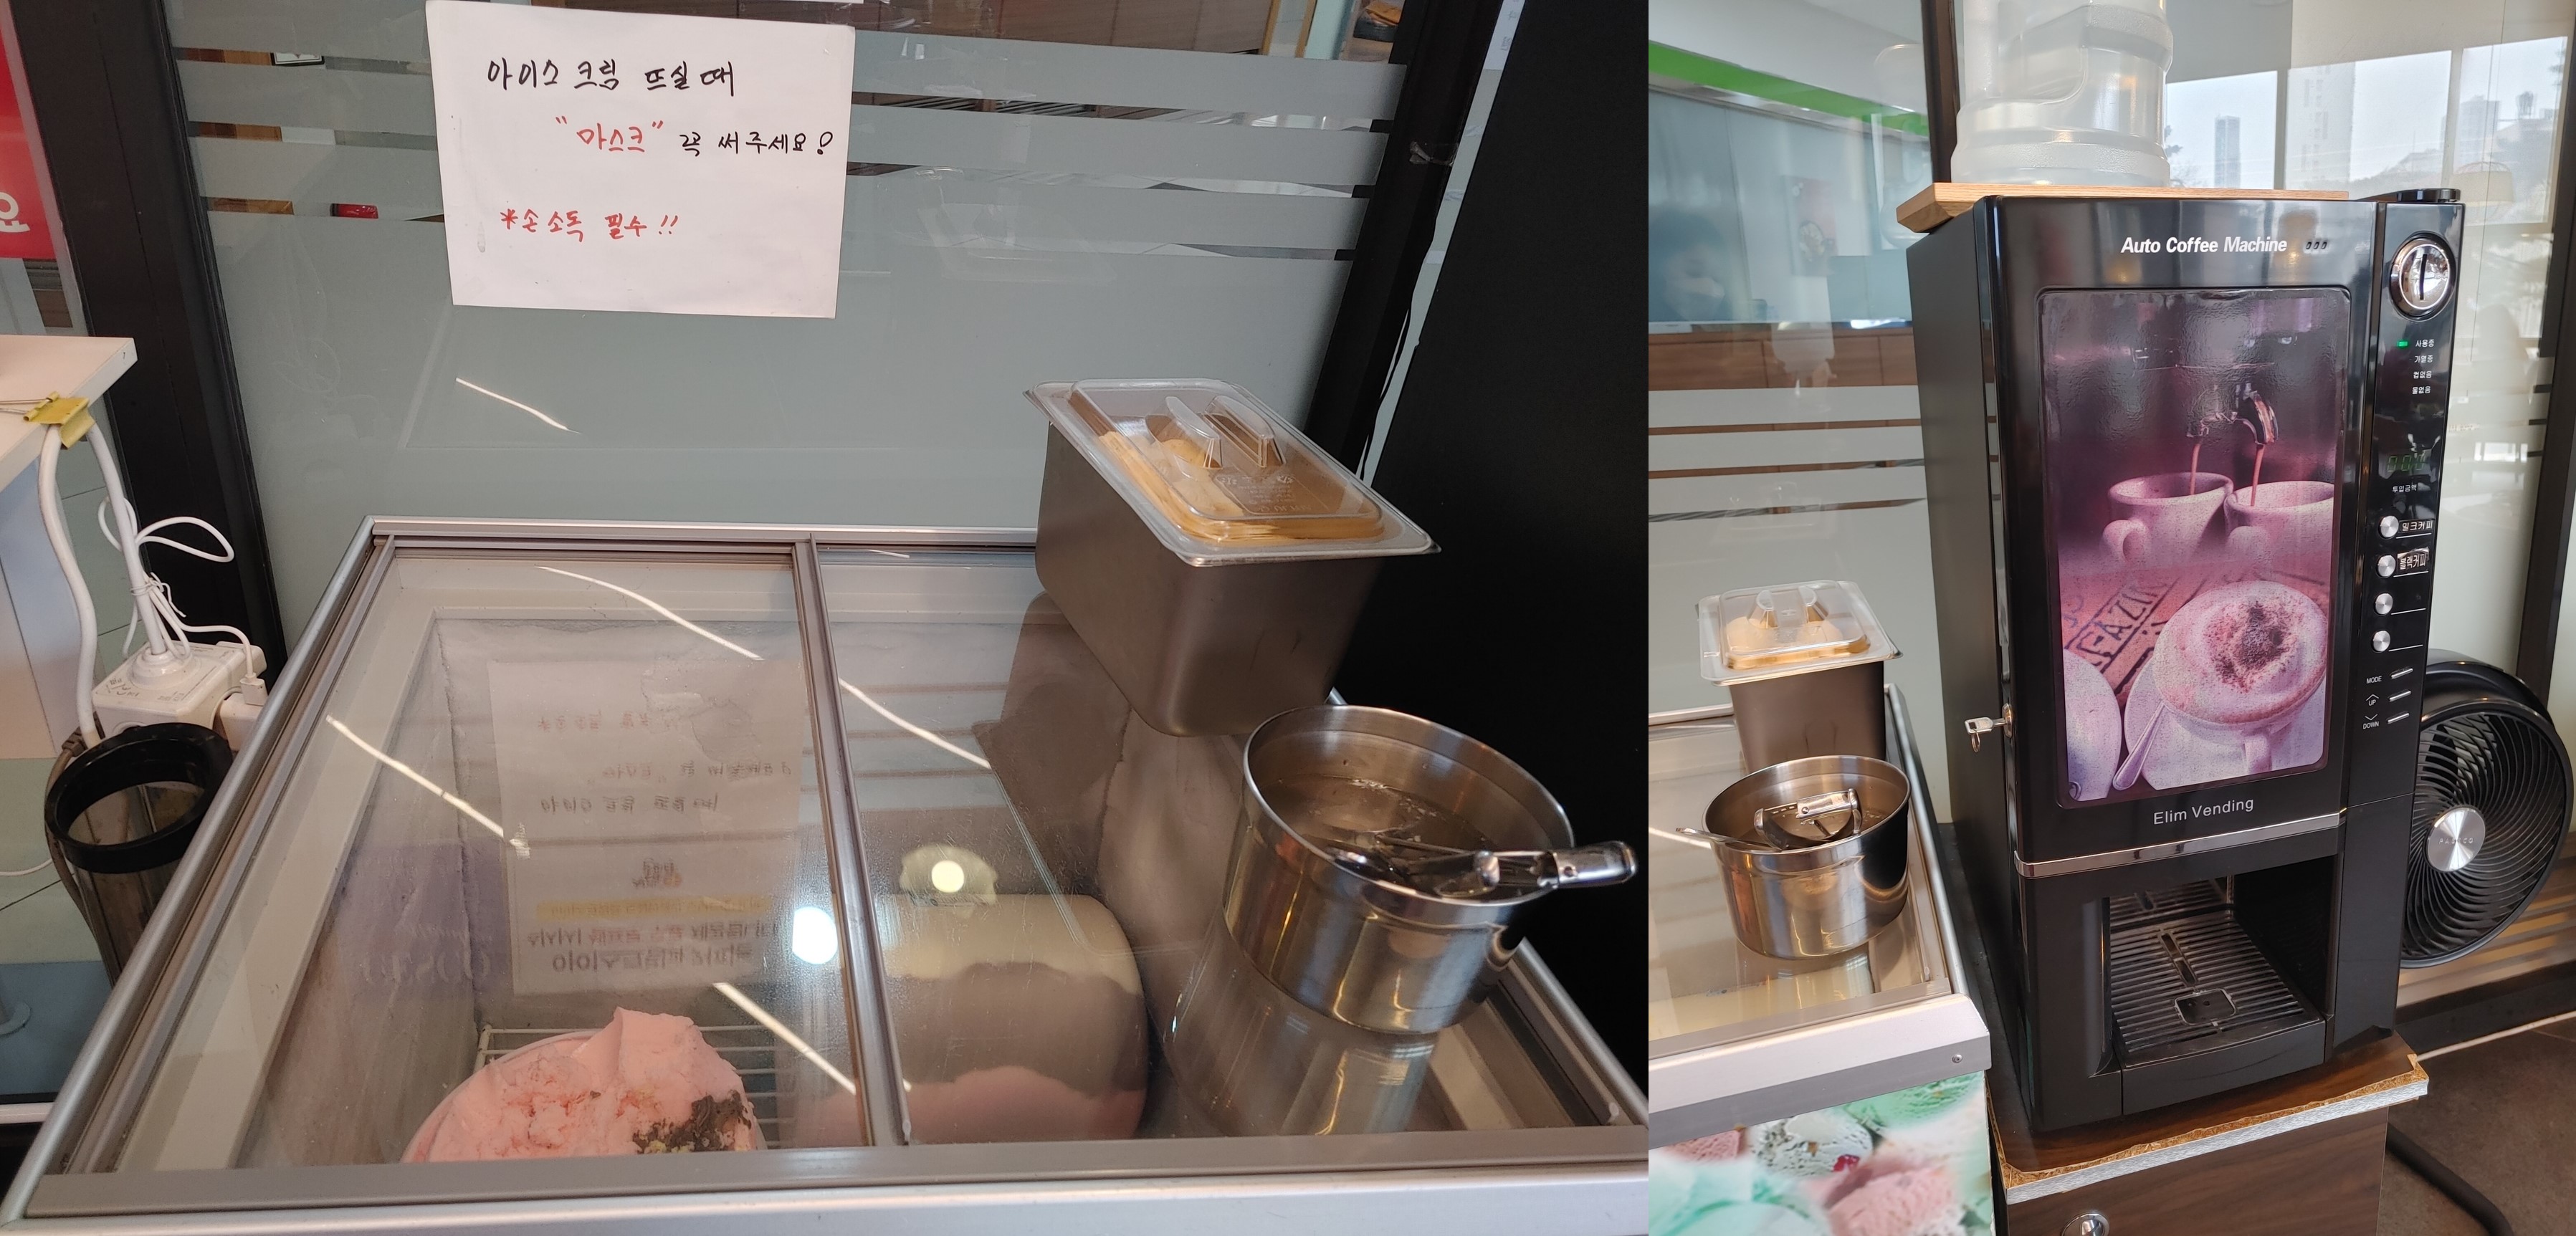 청계소담왕갈비탕-아이스크림-커피자판기